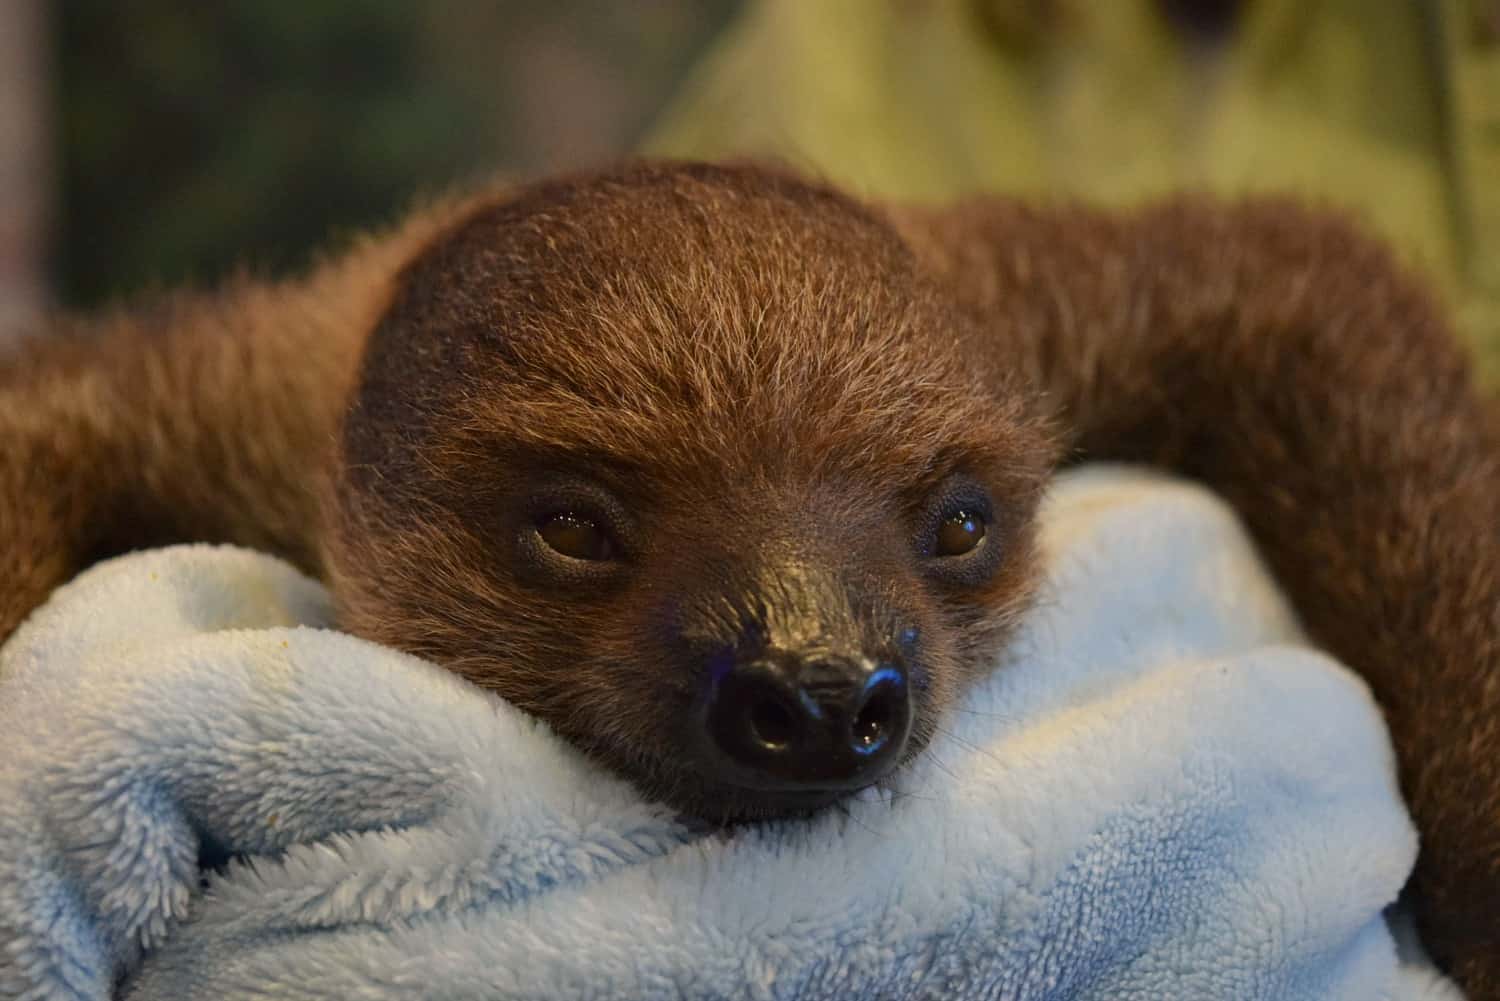 Baby sloth National Aviary